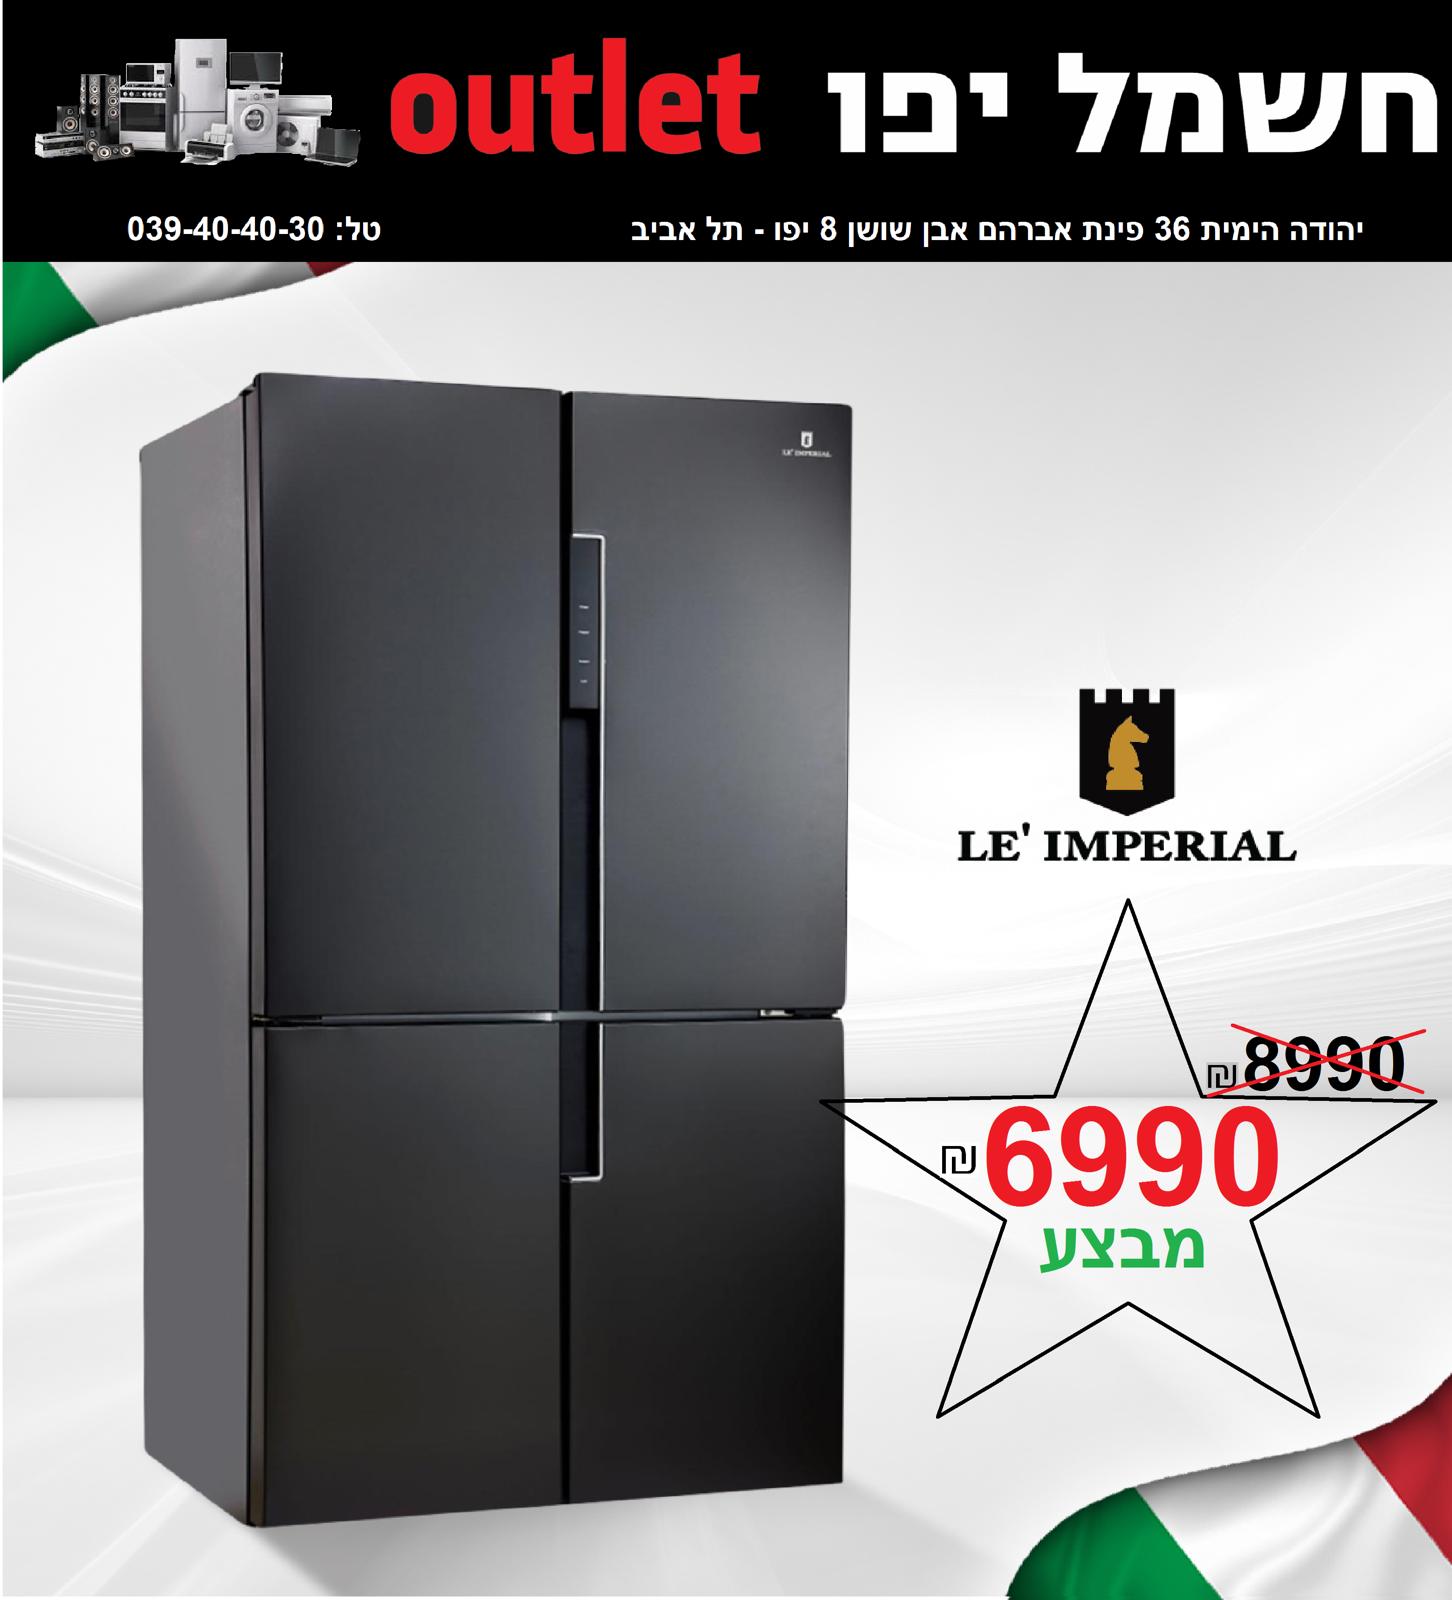 حملة التخفيضات مستمرة في اكبر صالة كهرباء في يافا OUTLET 